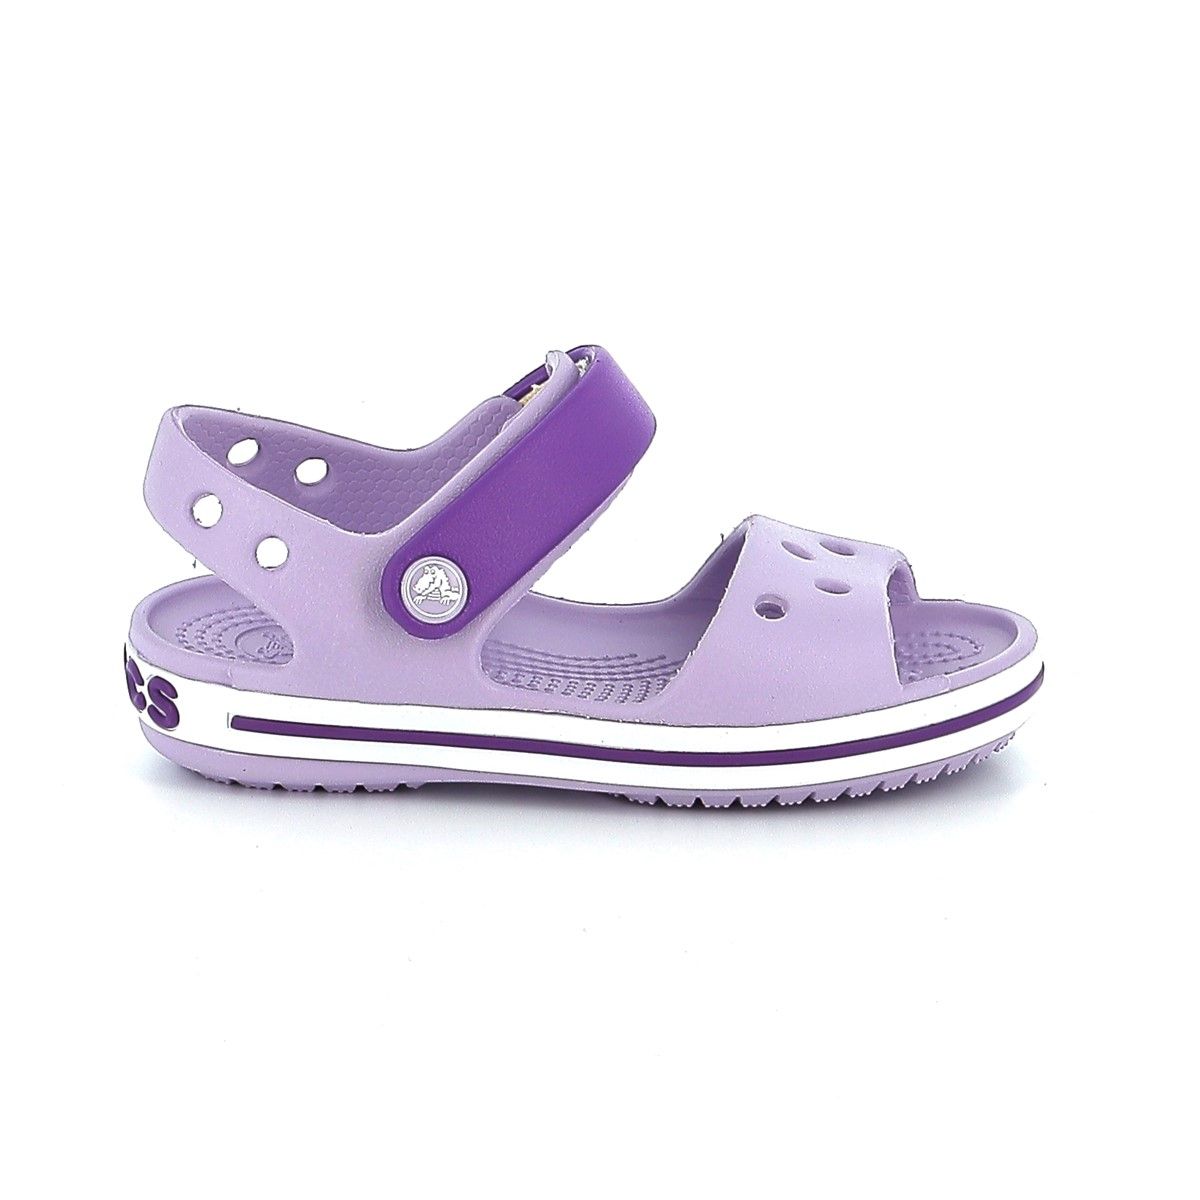 Παιδικό Πέδιλο για Κορίτσι Ανατομικό Crocs  Crocband Sandal Χρώματος Μωβ 12856-5P8